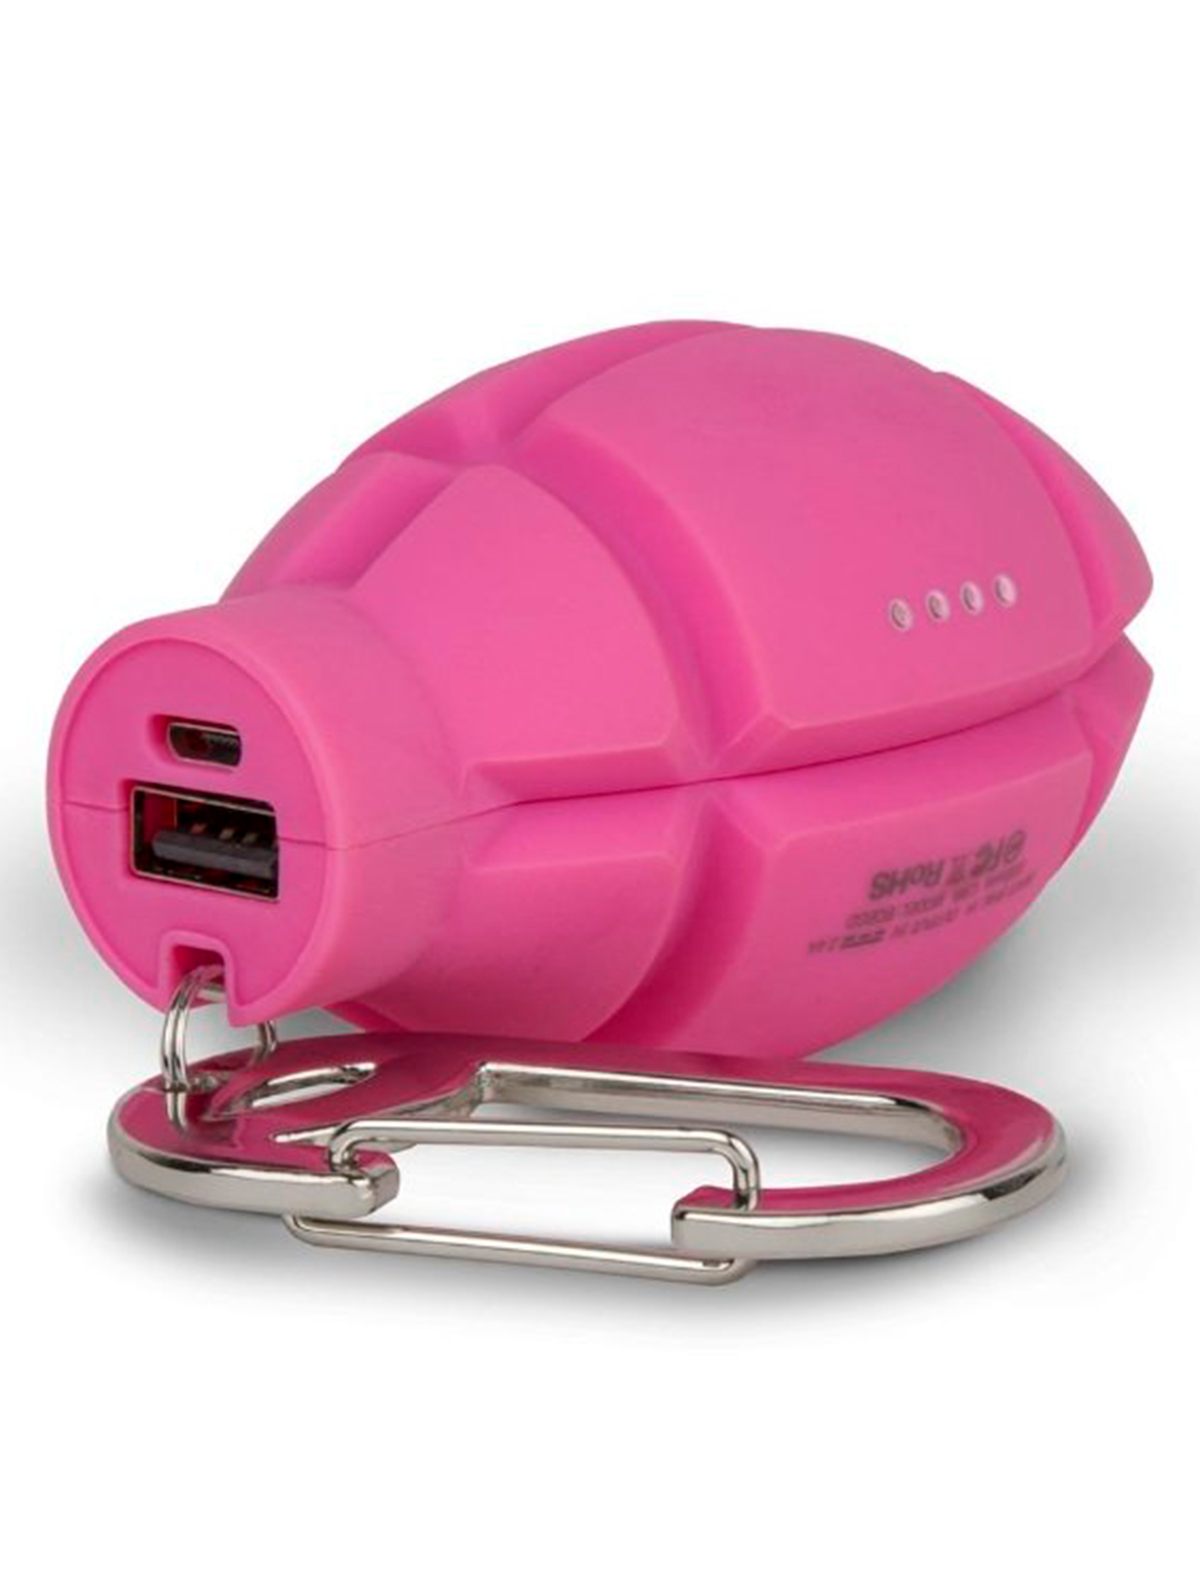 Зарядное устройство BUQU 2376212, цвет розовый 5354520180687 - фото 2